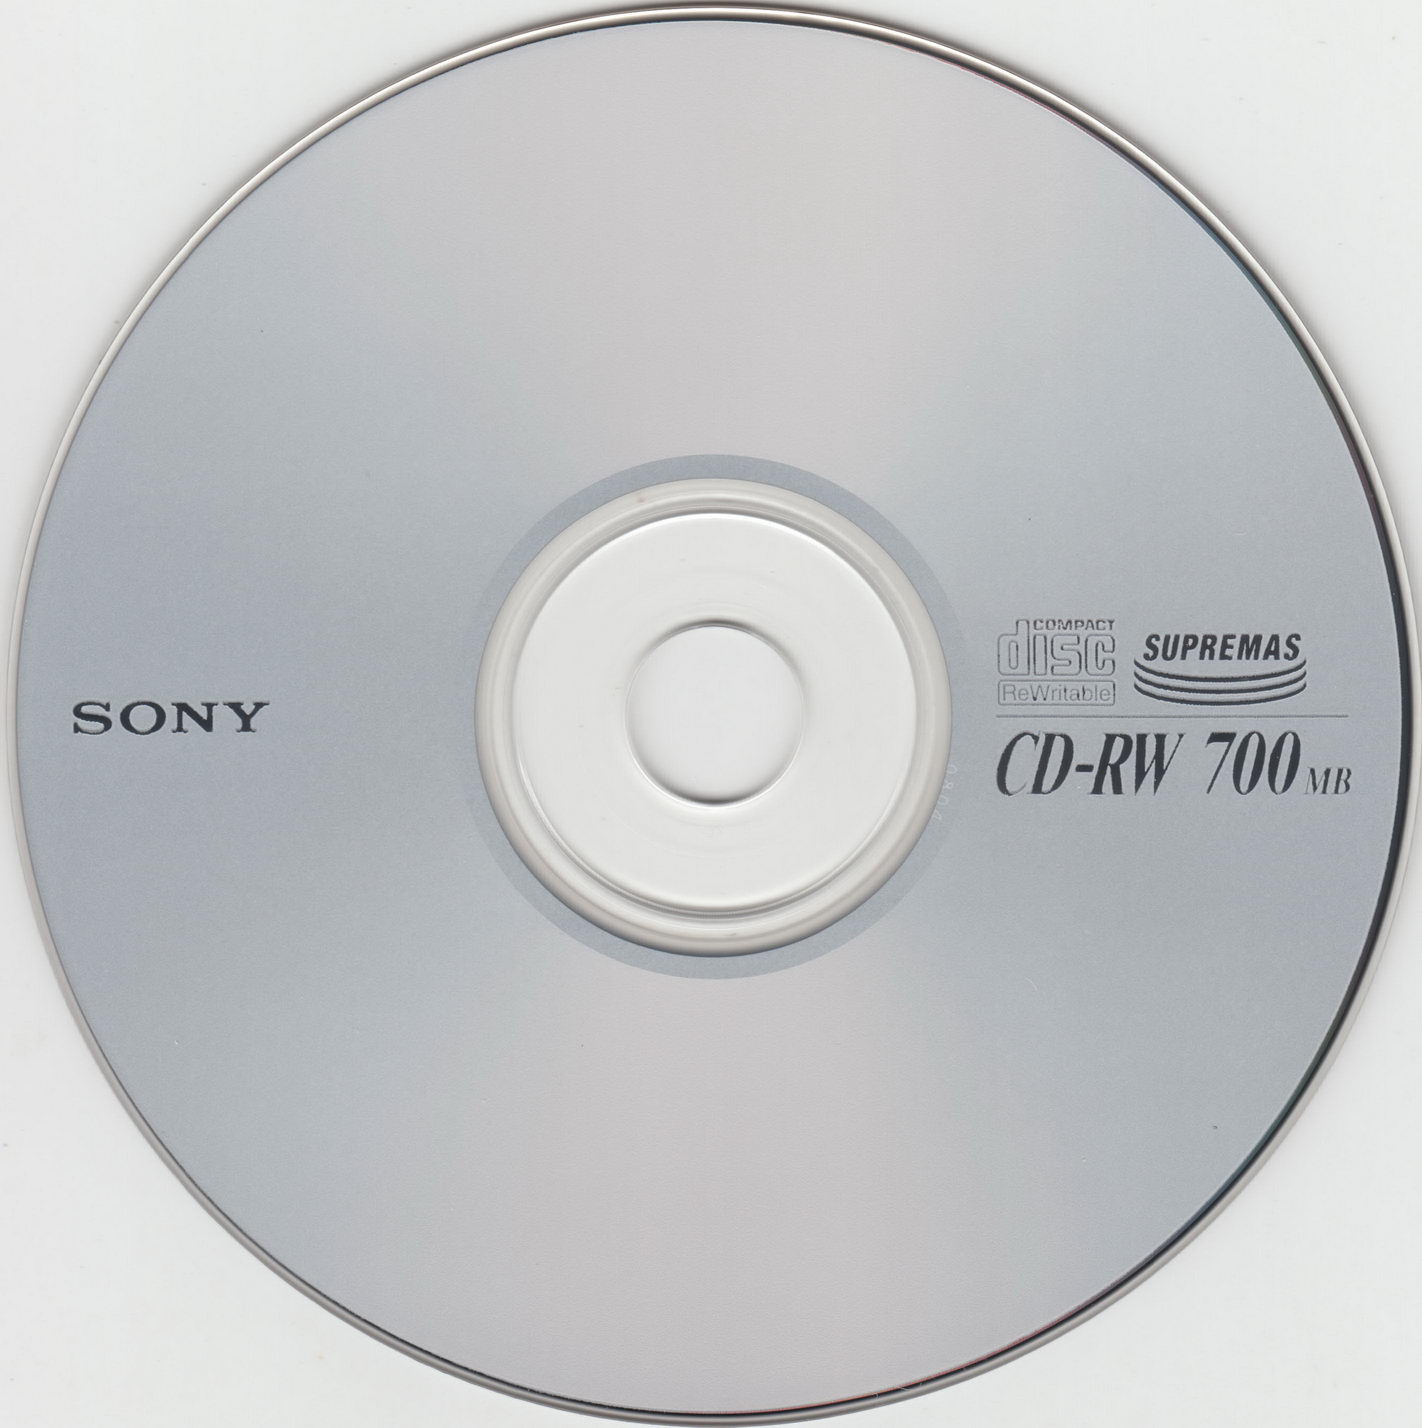  Sony CD-RW 700 4x10x slim 80min Supremas